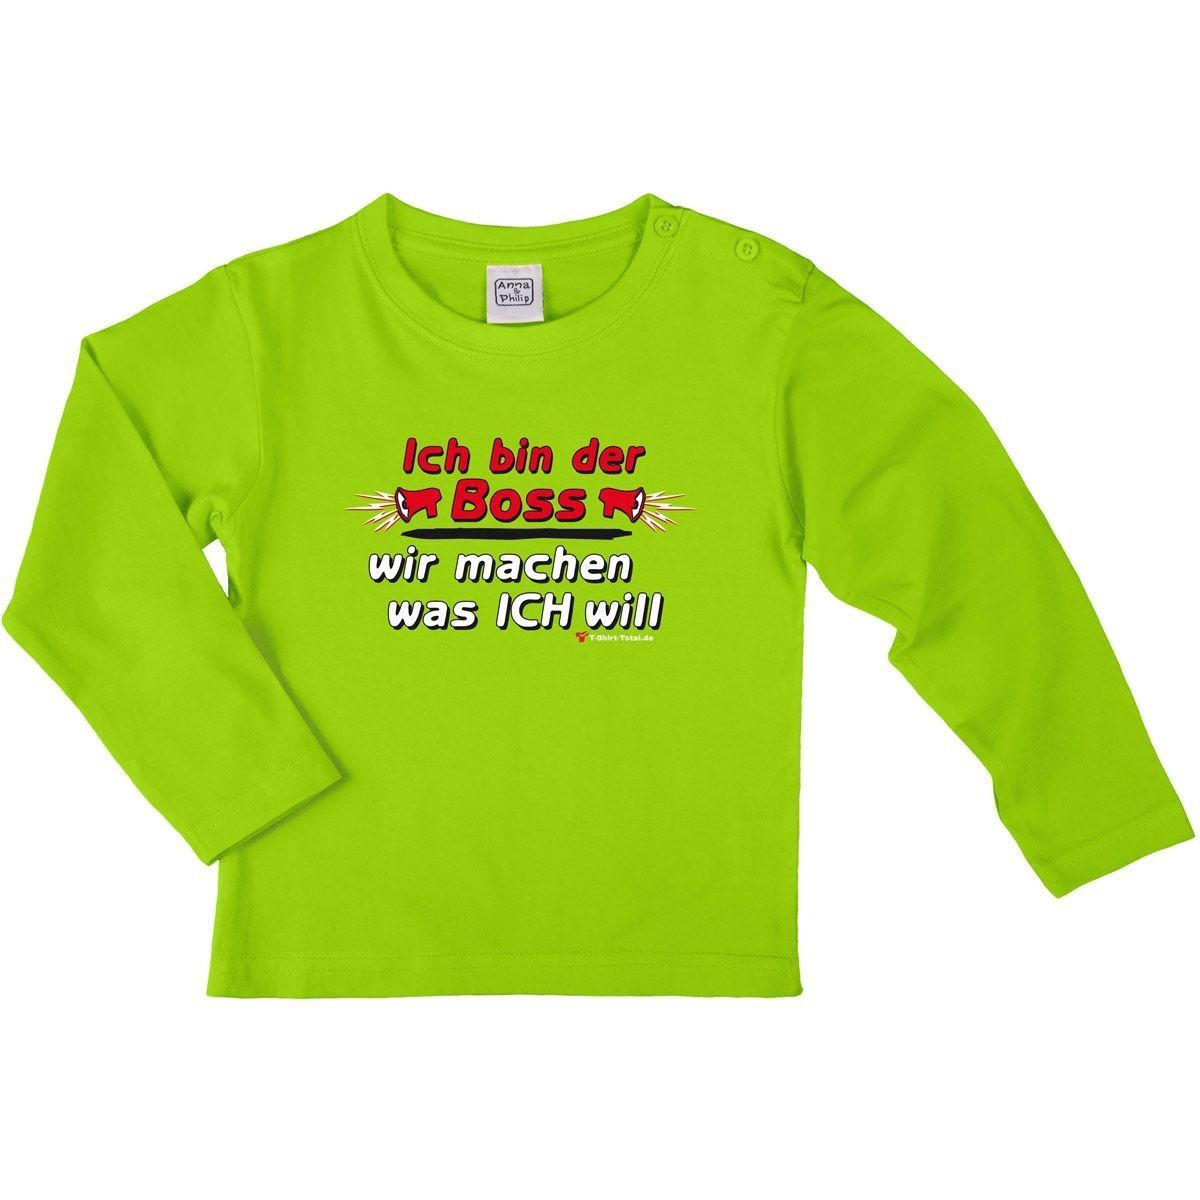 Ich bin der Boss Kinder Langarm Shirt hellgrün 122 / 128